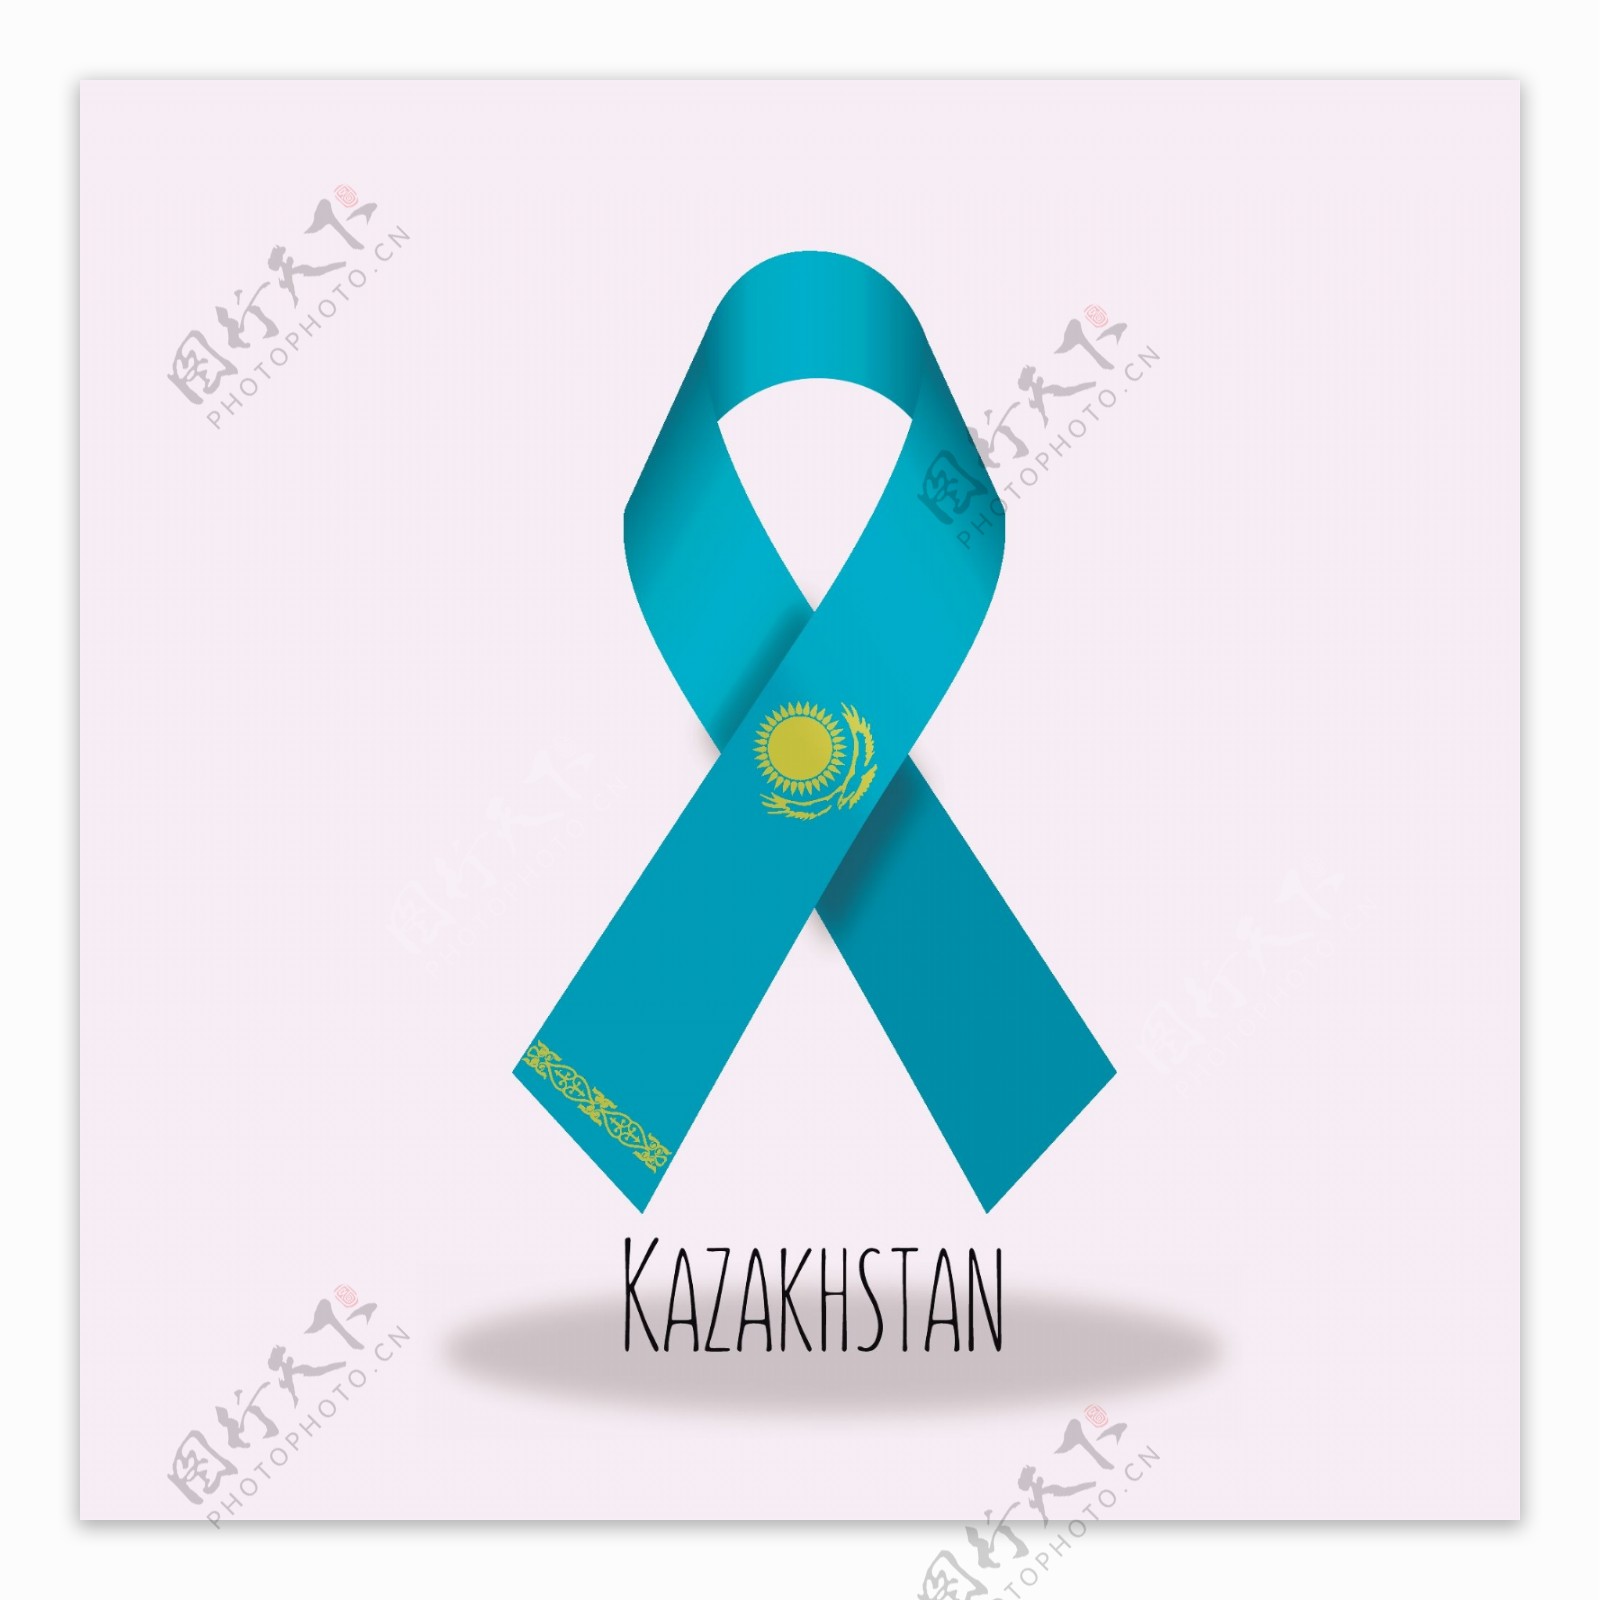 哈萨克斯坦国旗丝带设计矢量素材